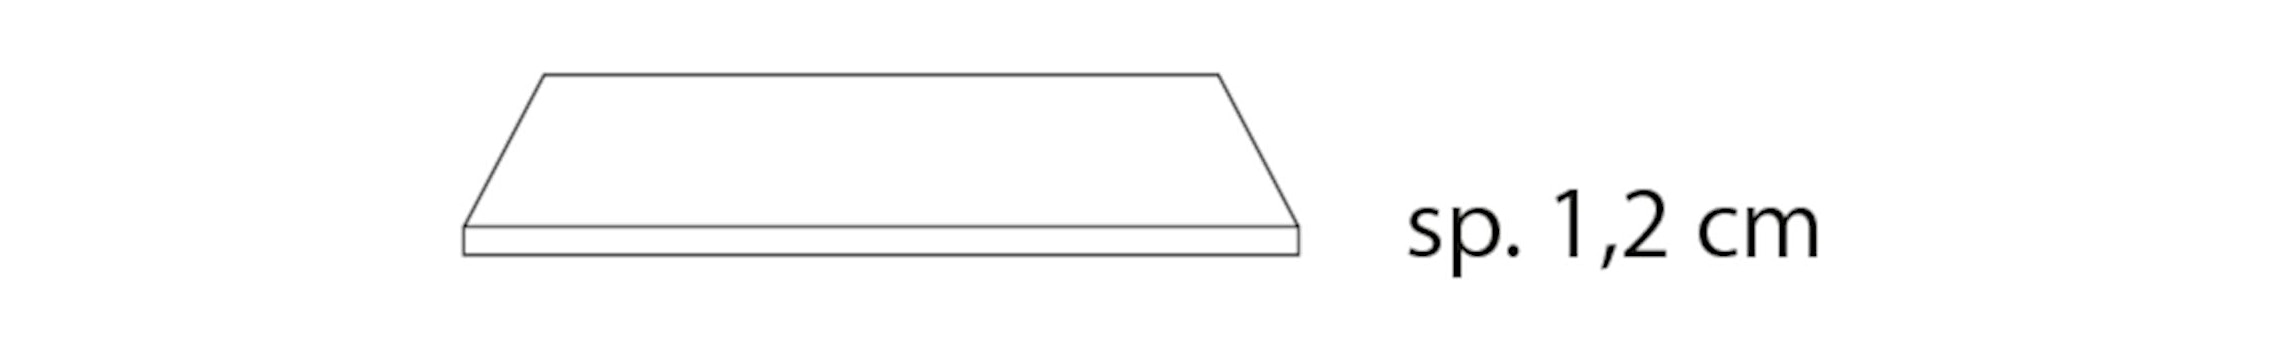 Nardi - Piano Tischplatte quadratisch 60 x 60 cm - 1